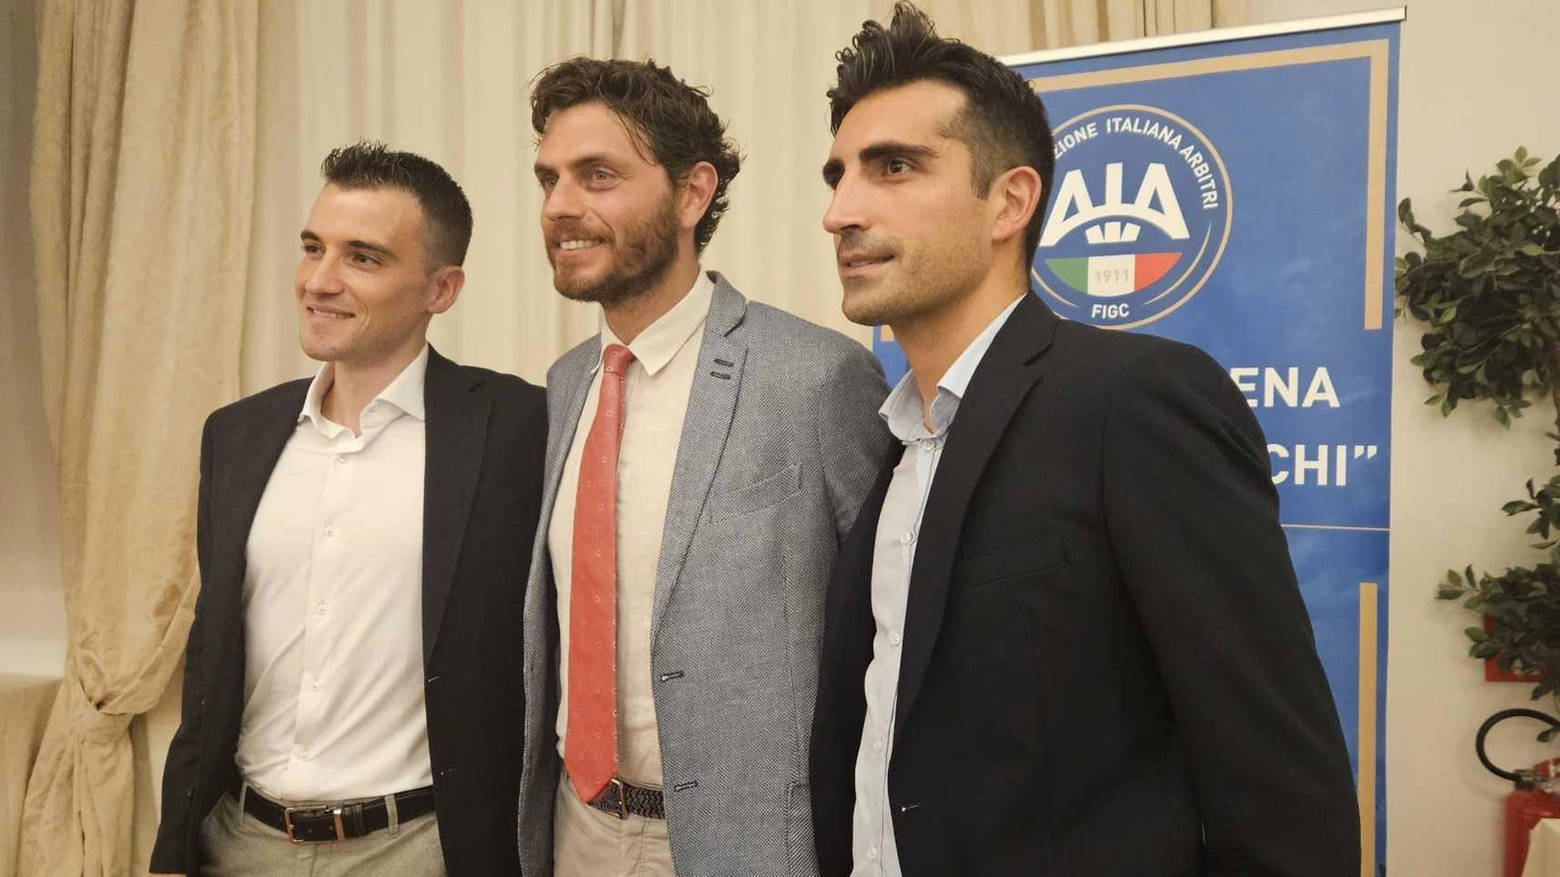 Valerio Crezzini e Simone Iuliano festeggiano la promozione ad arbitri Can, ringraziando chi li ha supportati nel lungo viaggio della carriera arbitrale.